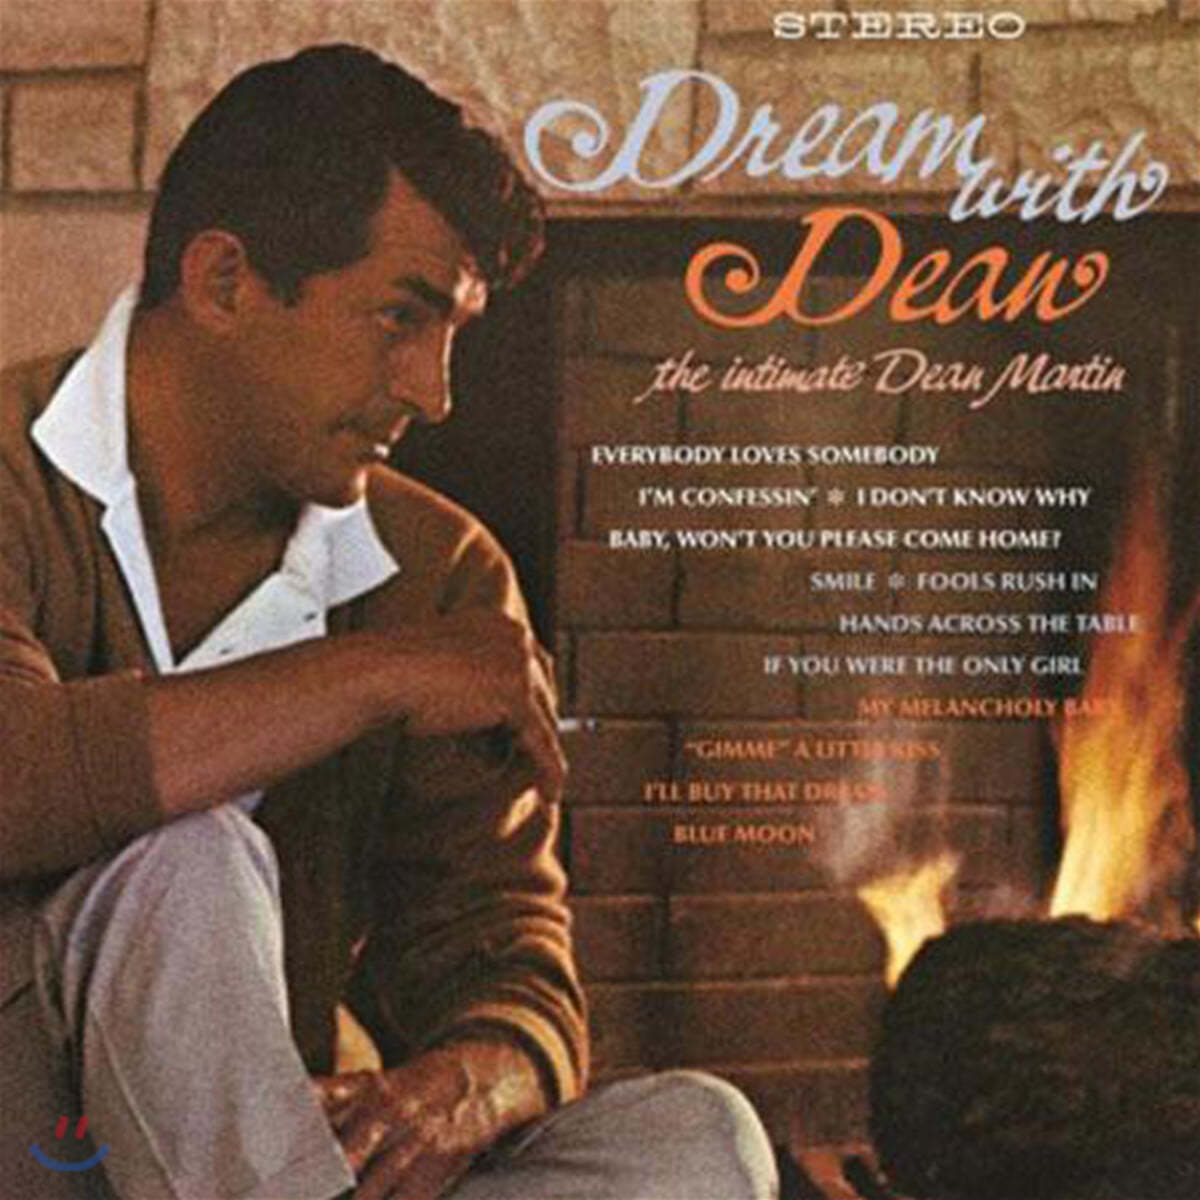 Dean Martin (딘 마틴) - Dream With Dean: The Intimate Dean Martin [2LP]